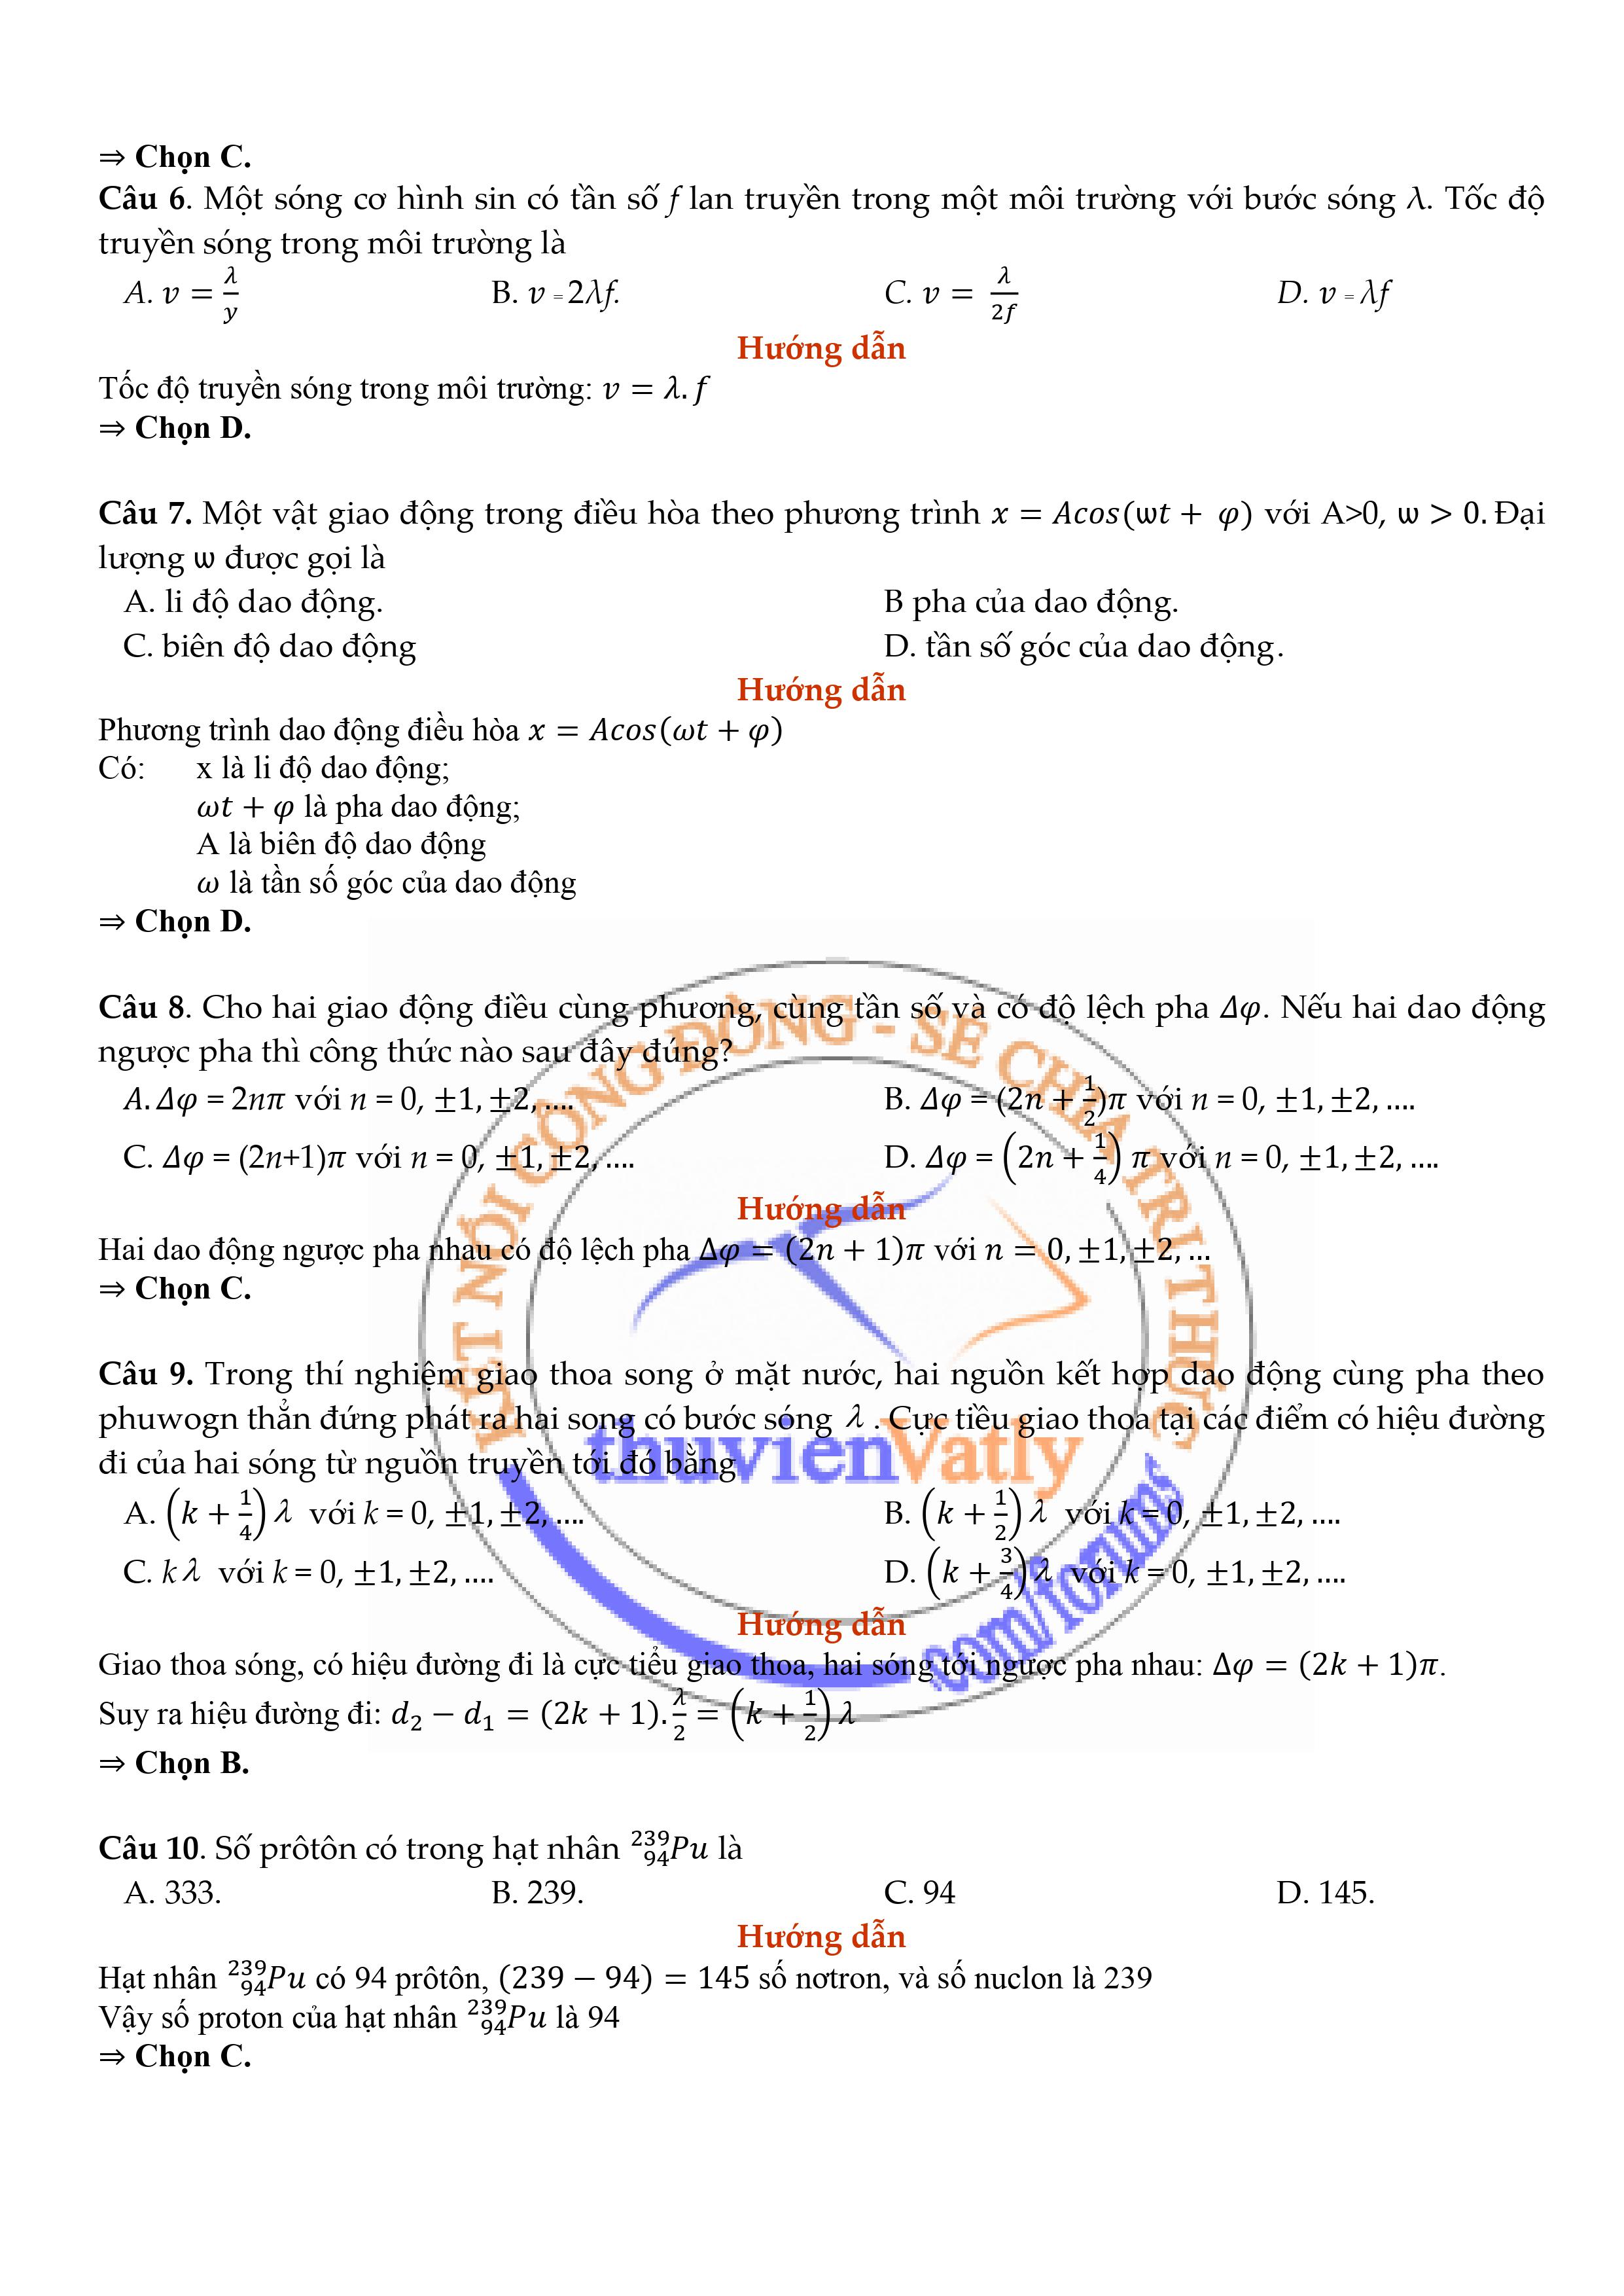 Trang 2 - Giải chi tiết mã đề 206 môn Vật Lý đề thi TN THPT 2020